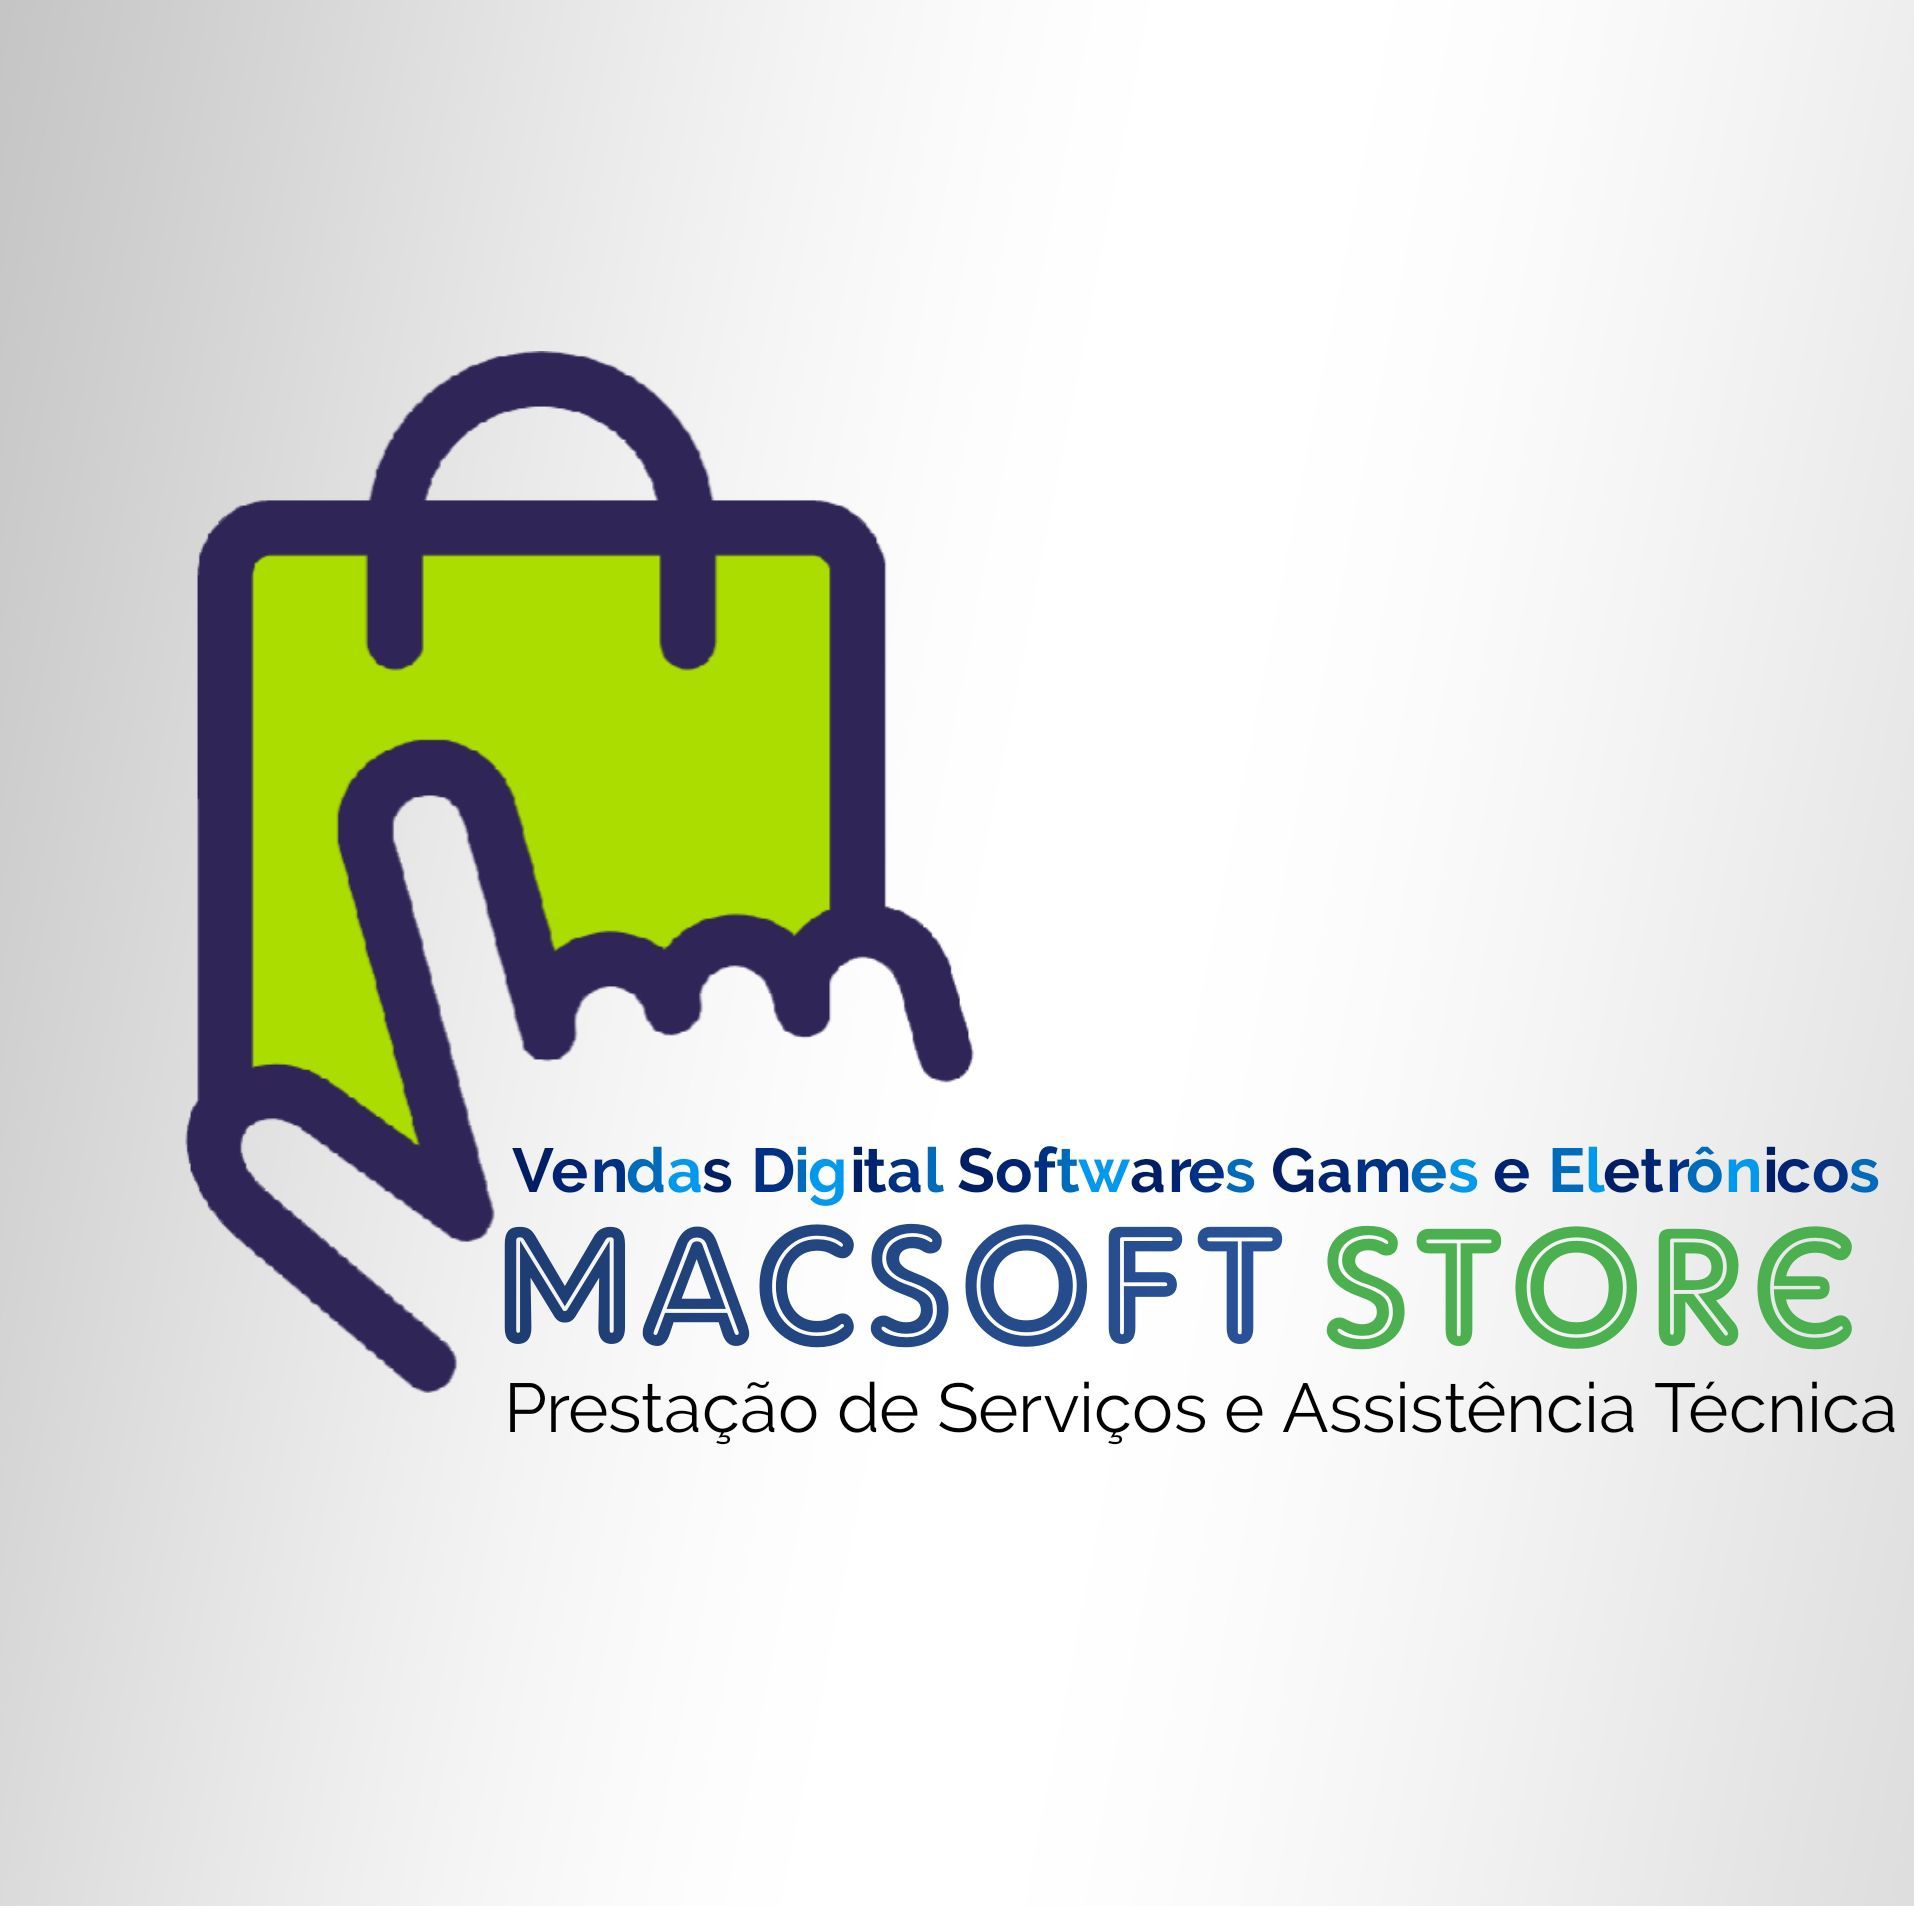 Macsoft Store